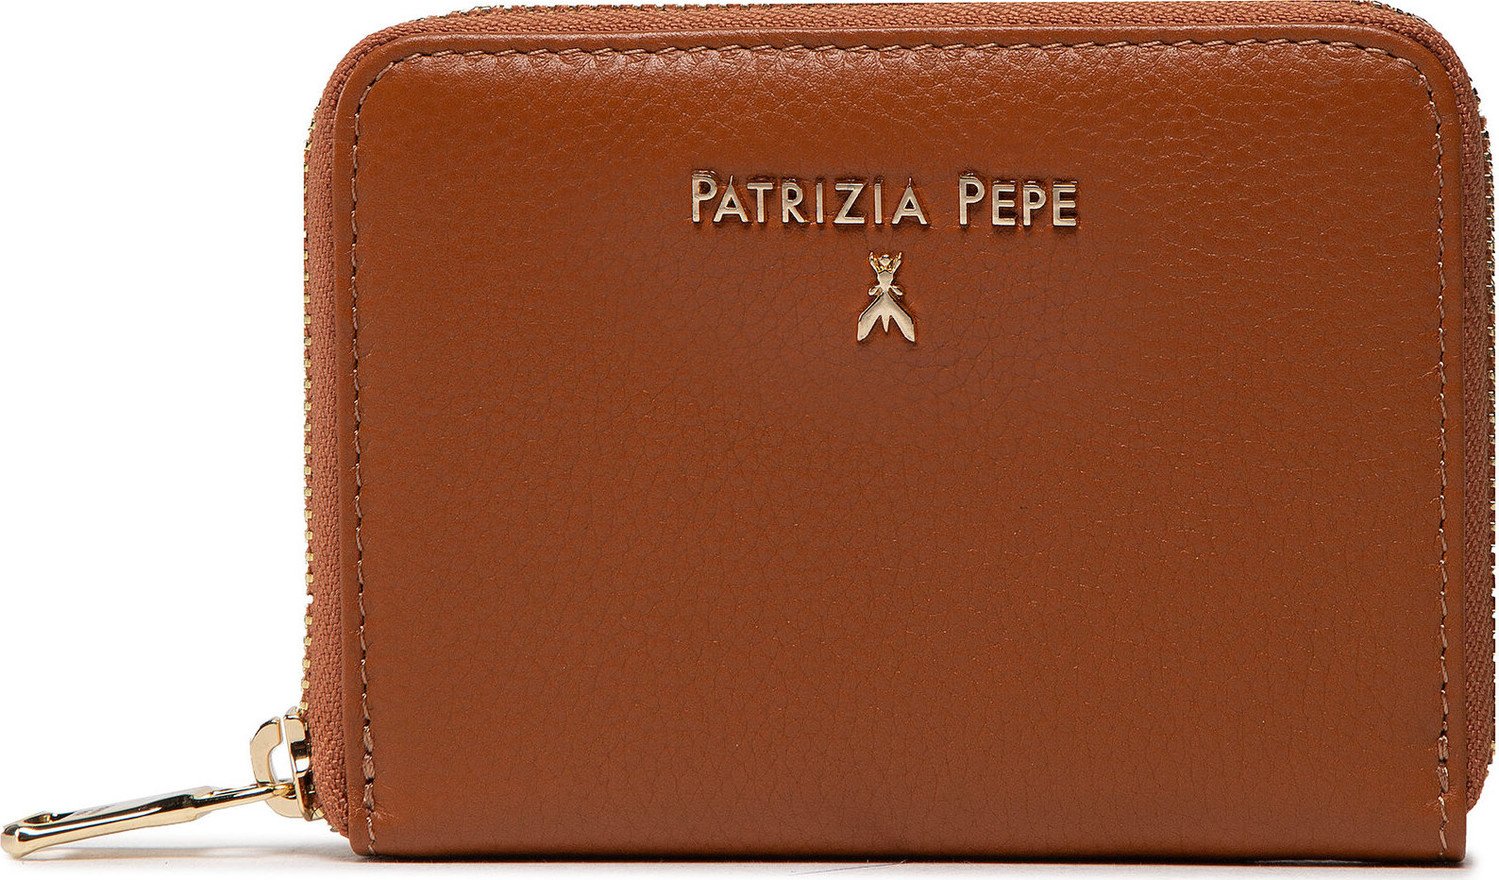 Velká dámská peněženka Patrizia Pepe CQ8512/L001-B757 New Cuoio